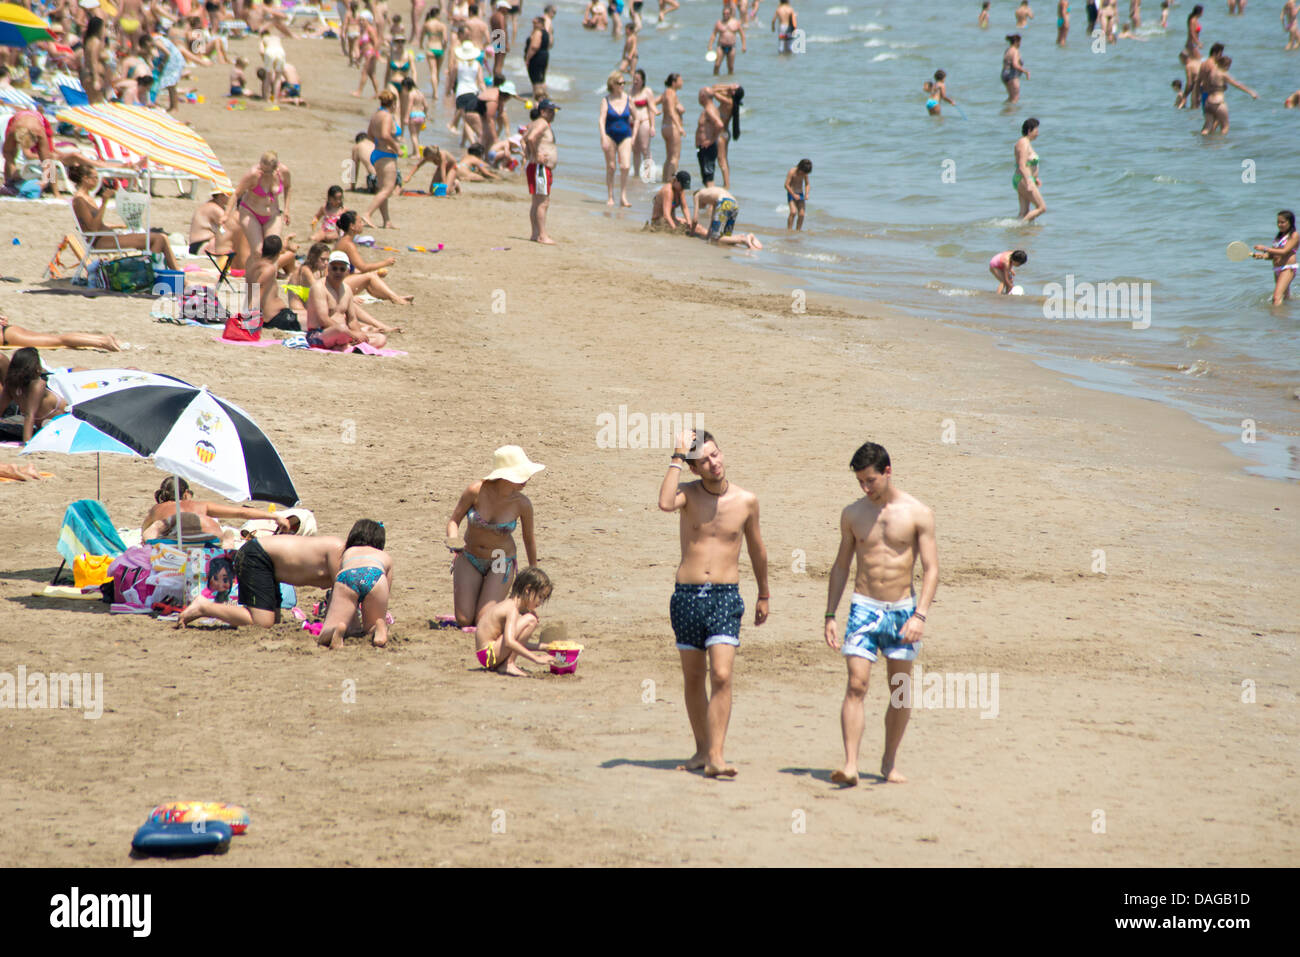 Valence, Espagne. 11 juillet, 2013. Les personnes bénéficiant de l'été dans la plage Malvarrosa urbain, Valencia, Espagne Crédit : Salva Garrigues/Alamy Live News Banque D'Images